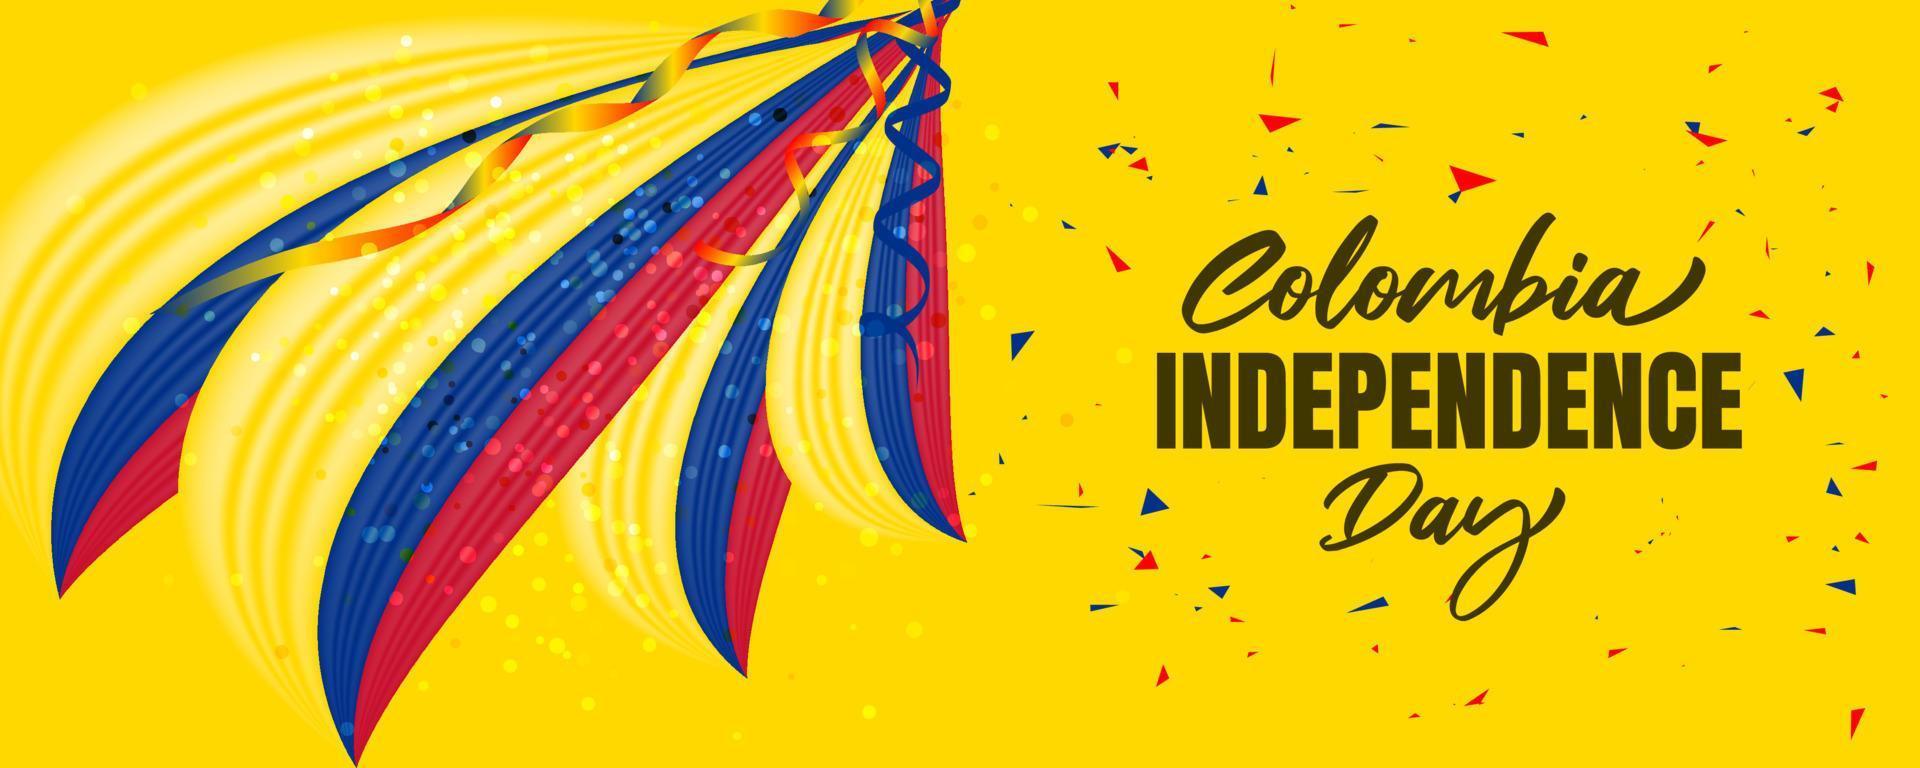 dia da independência da colômbia com bandeira da colômbia acenando e design de fundo de cor amarela vetor